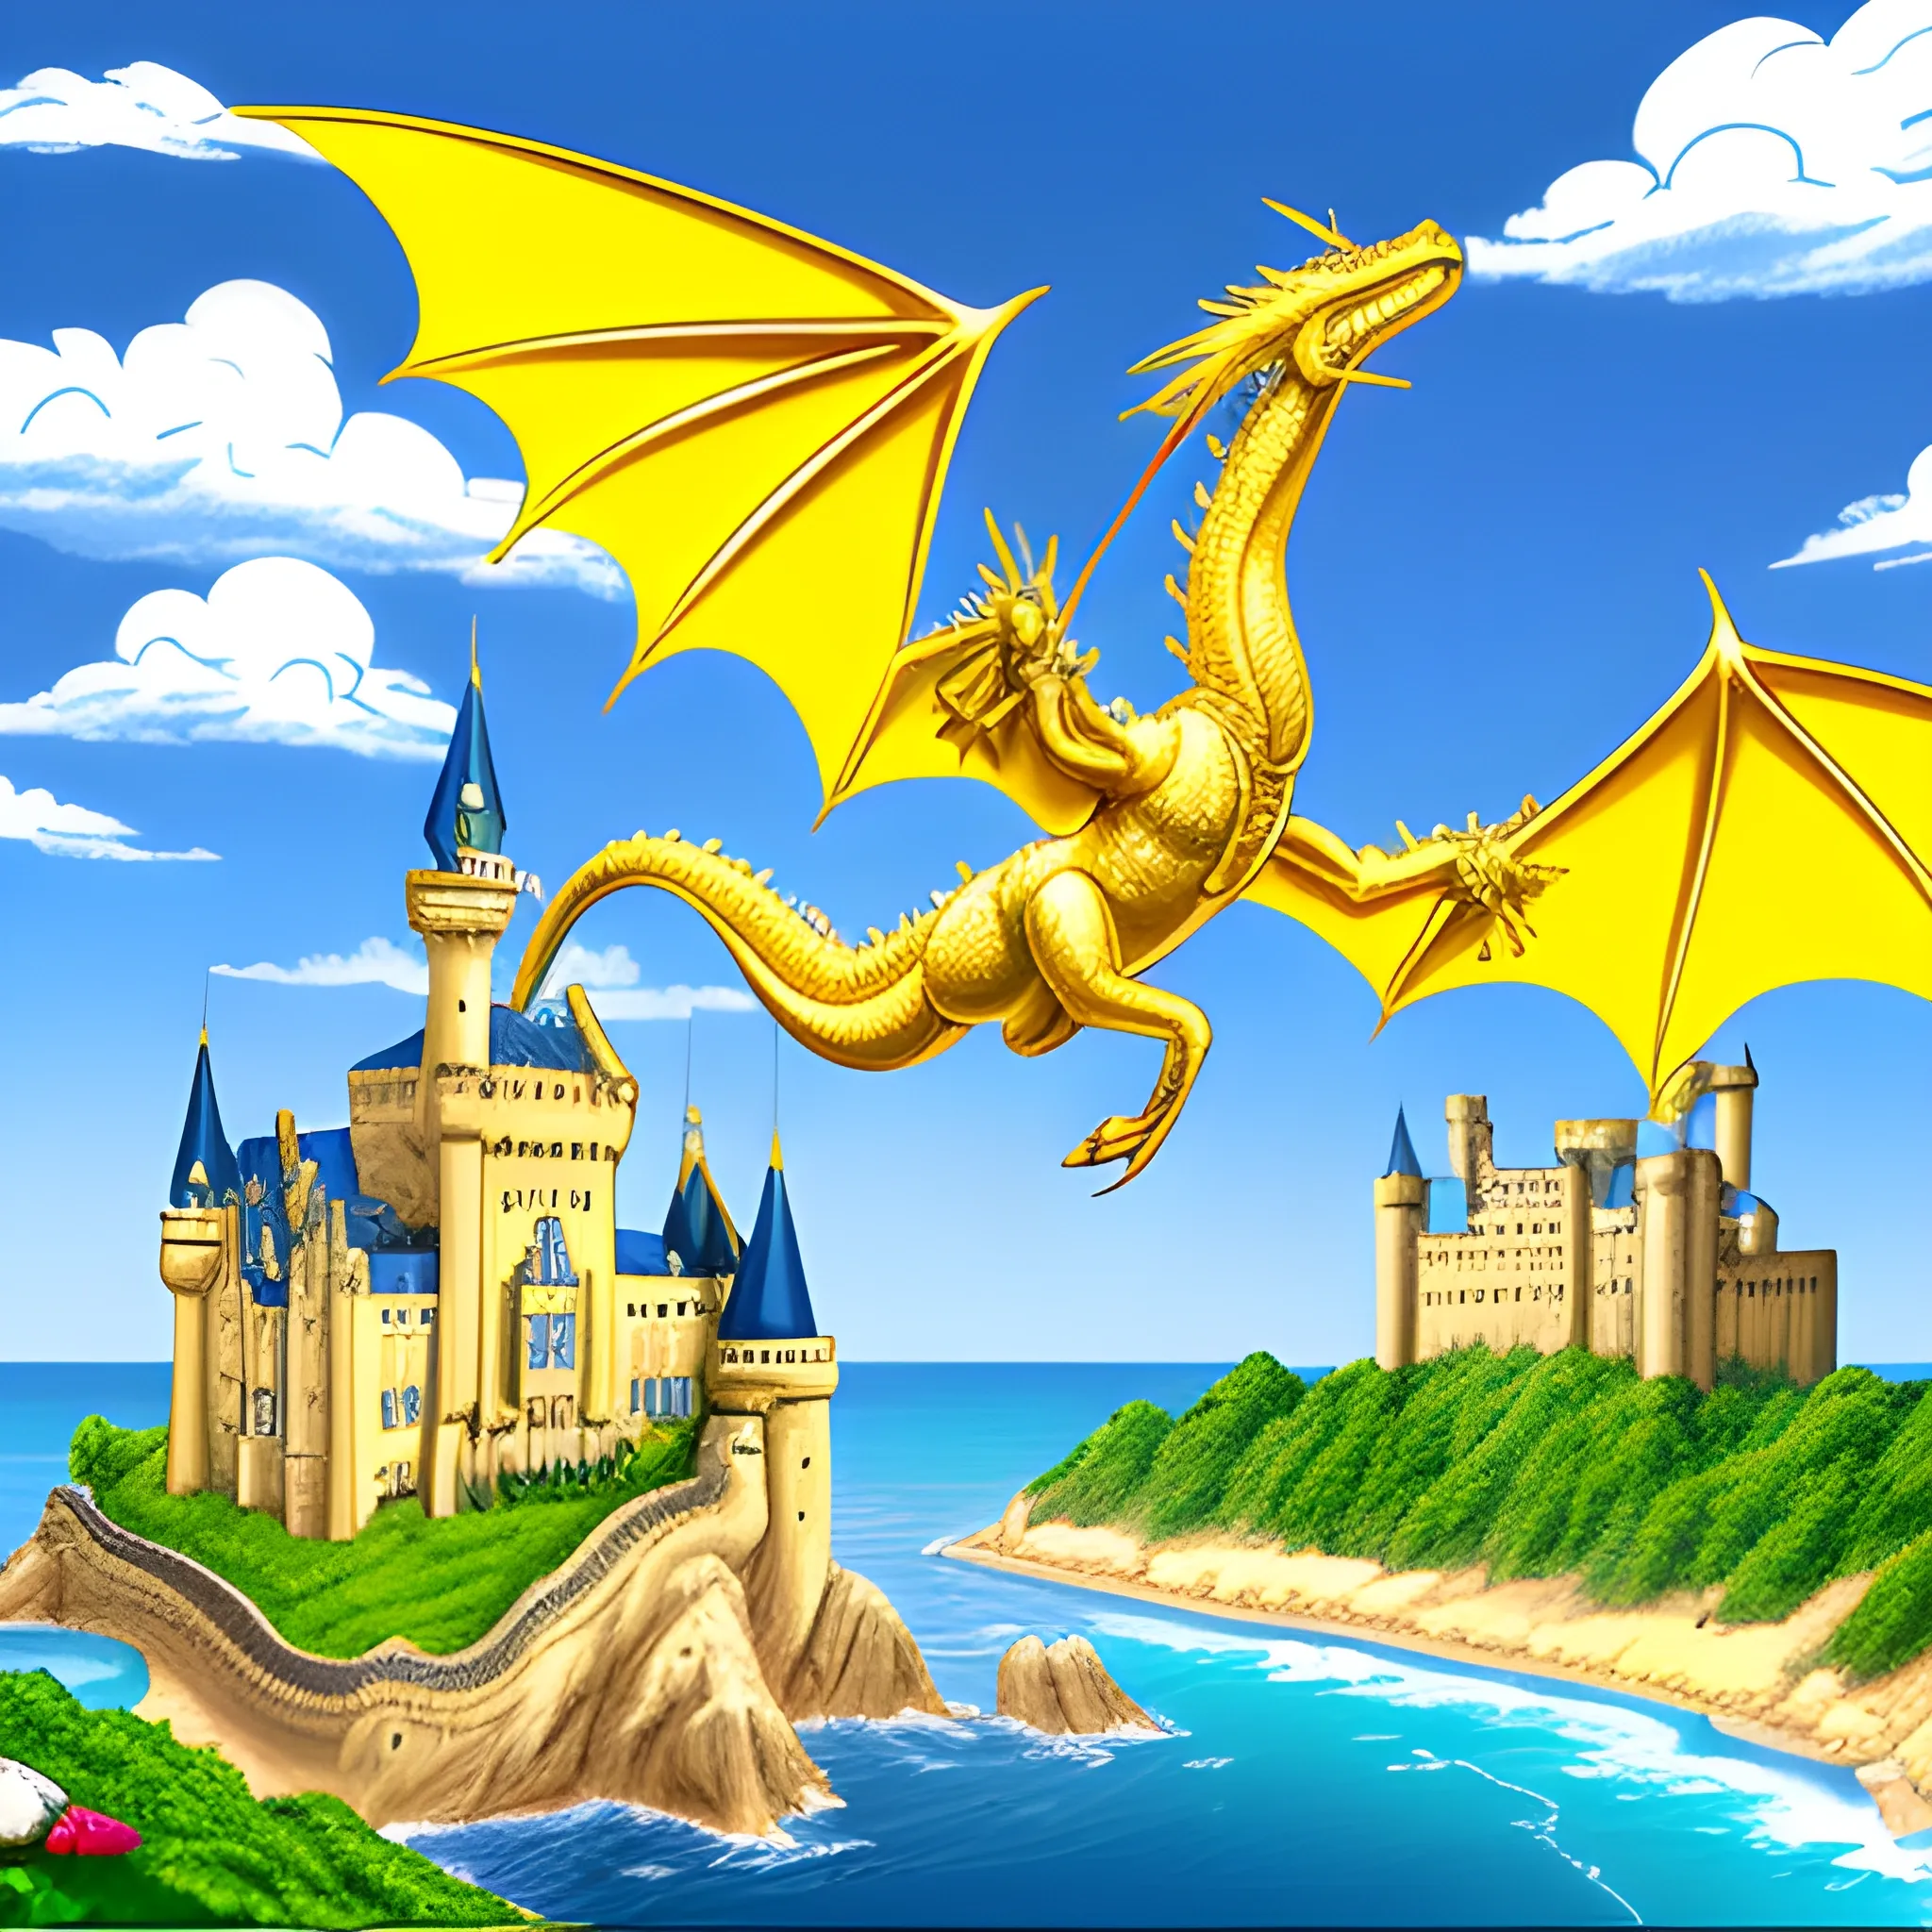 Widescreen gold dragon soaring over a castle on a seashore, Cartoon